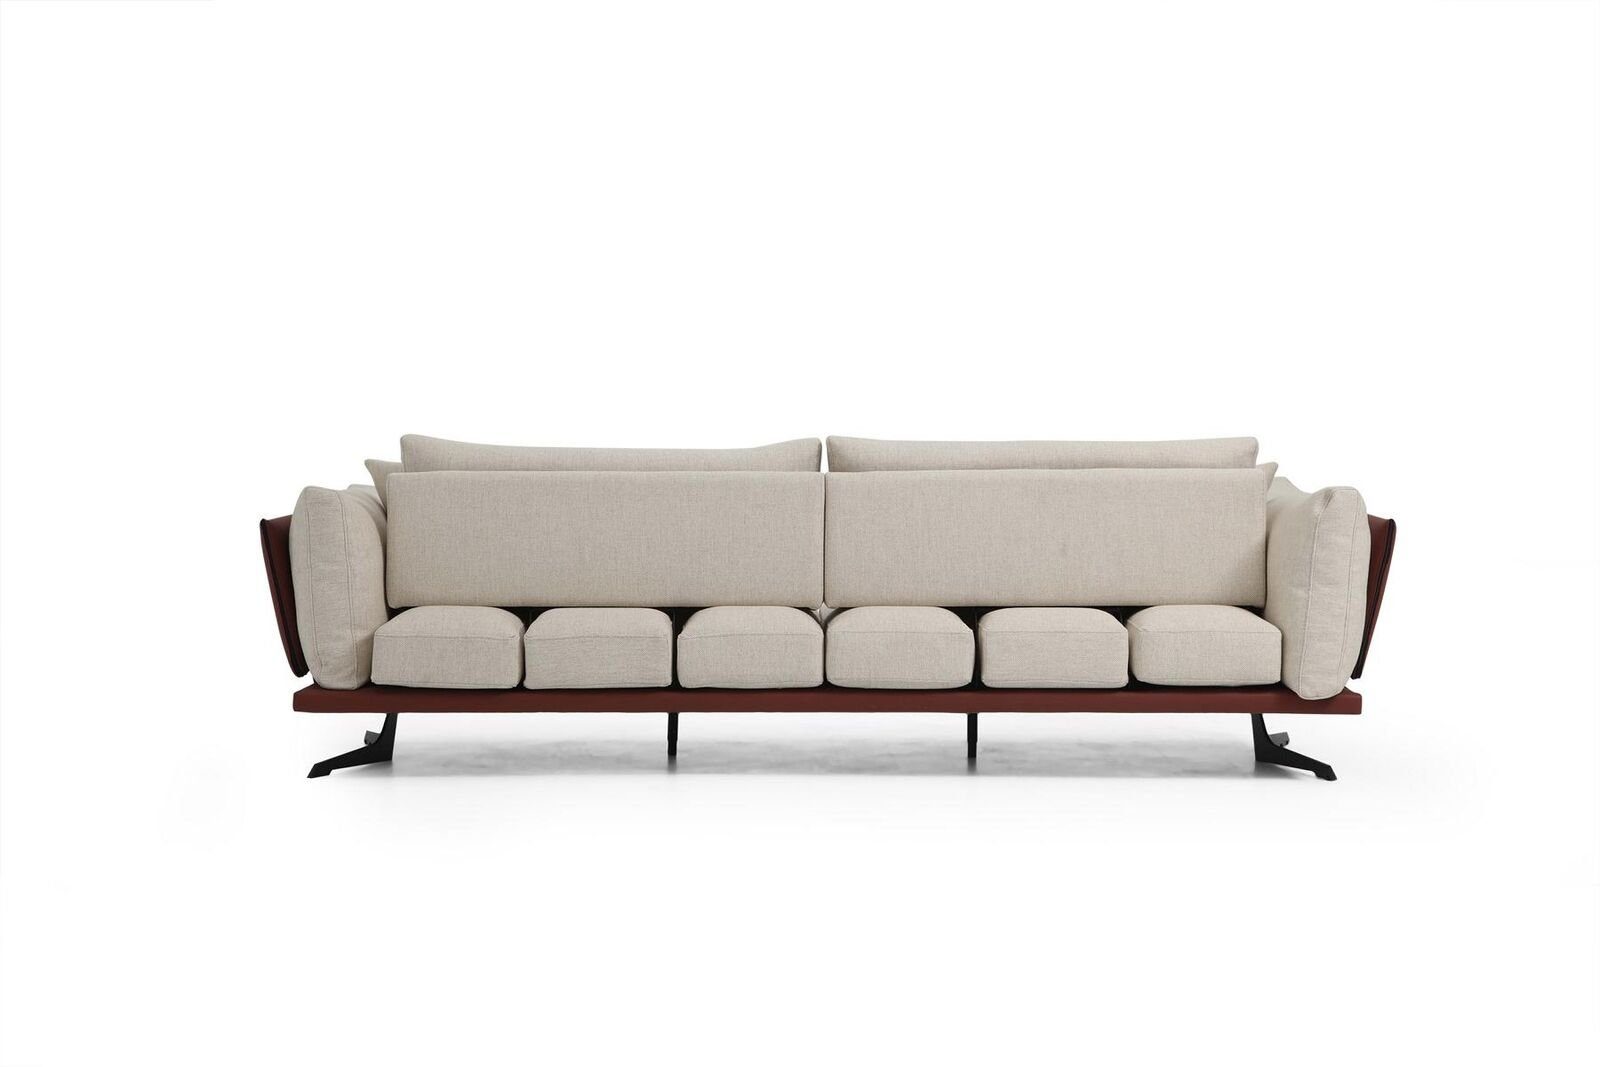 JVmoebel 4-Sitzer Viersitzer Sofa Beige Luxus, in Modern 1 Design Teile, Sitzer 4 Europa Wohnzimmer Made Stoff